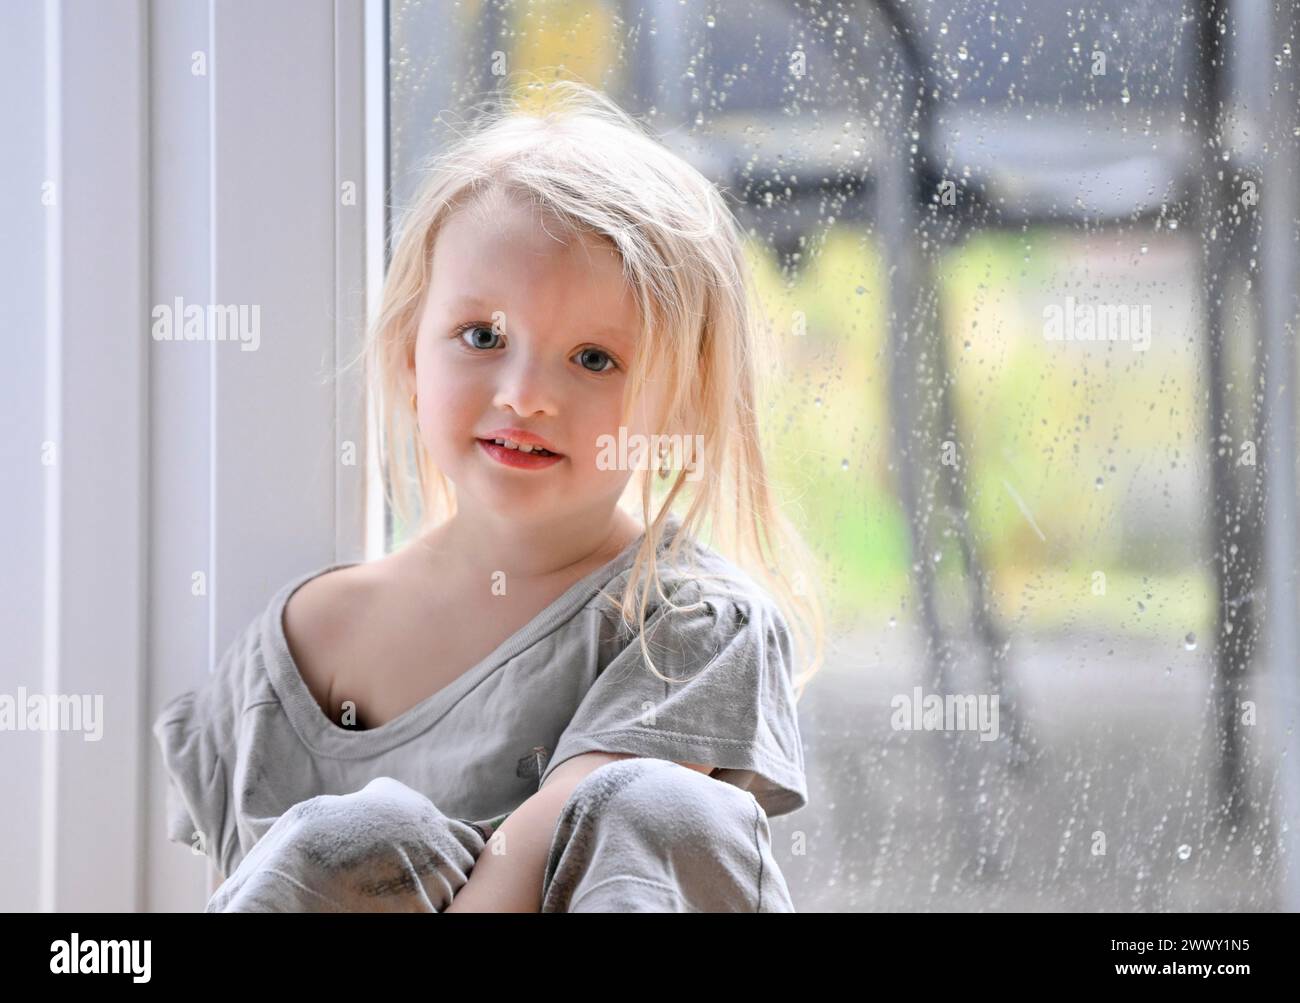 Petite fille, 2-3 ans, blonde, portrait, devant la fenêtre, pluie, gouttes de pluie sur la vitre, sourire, Stuttgart, Bade-Wuerttemberg, Allemagne Banque D'Images